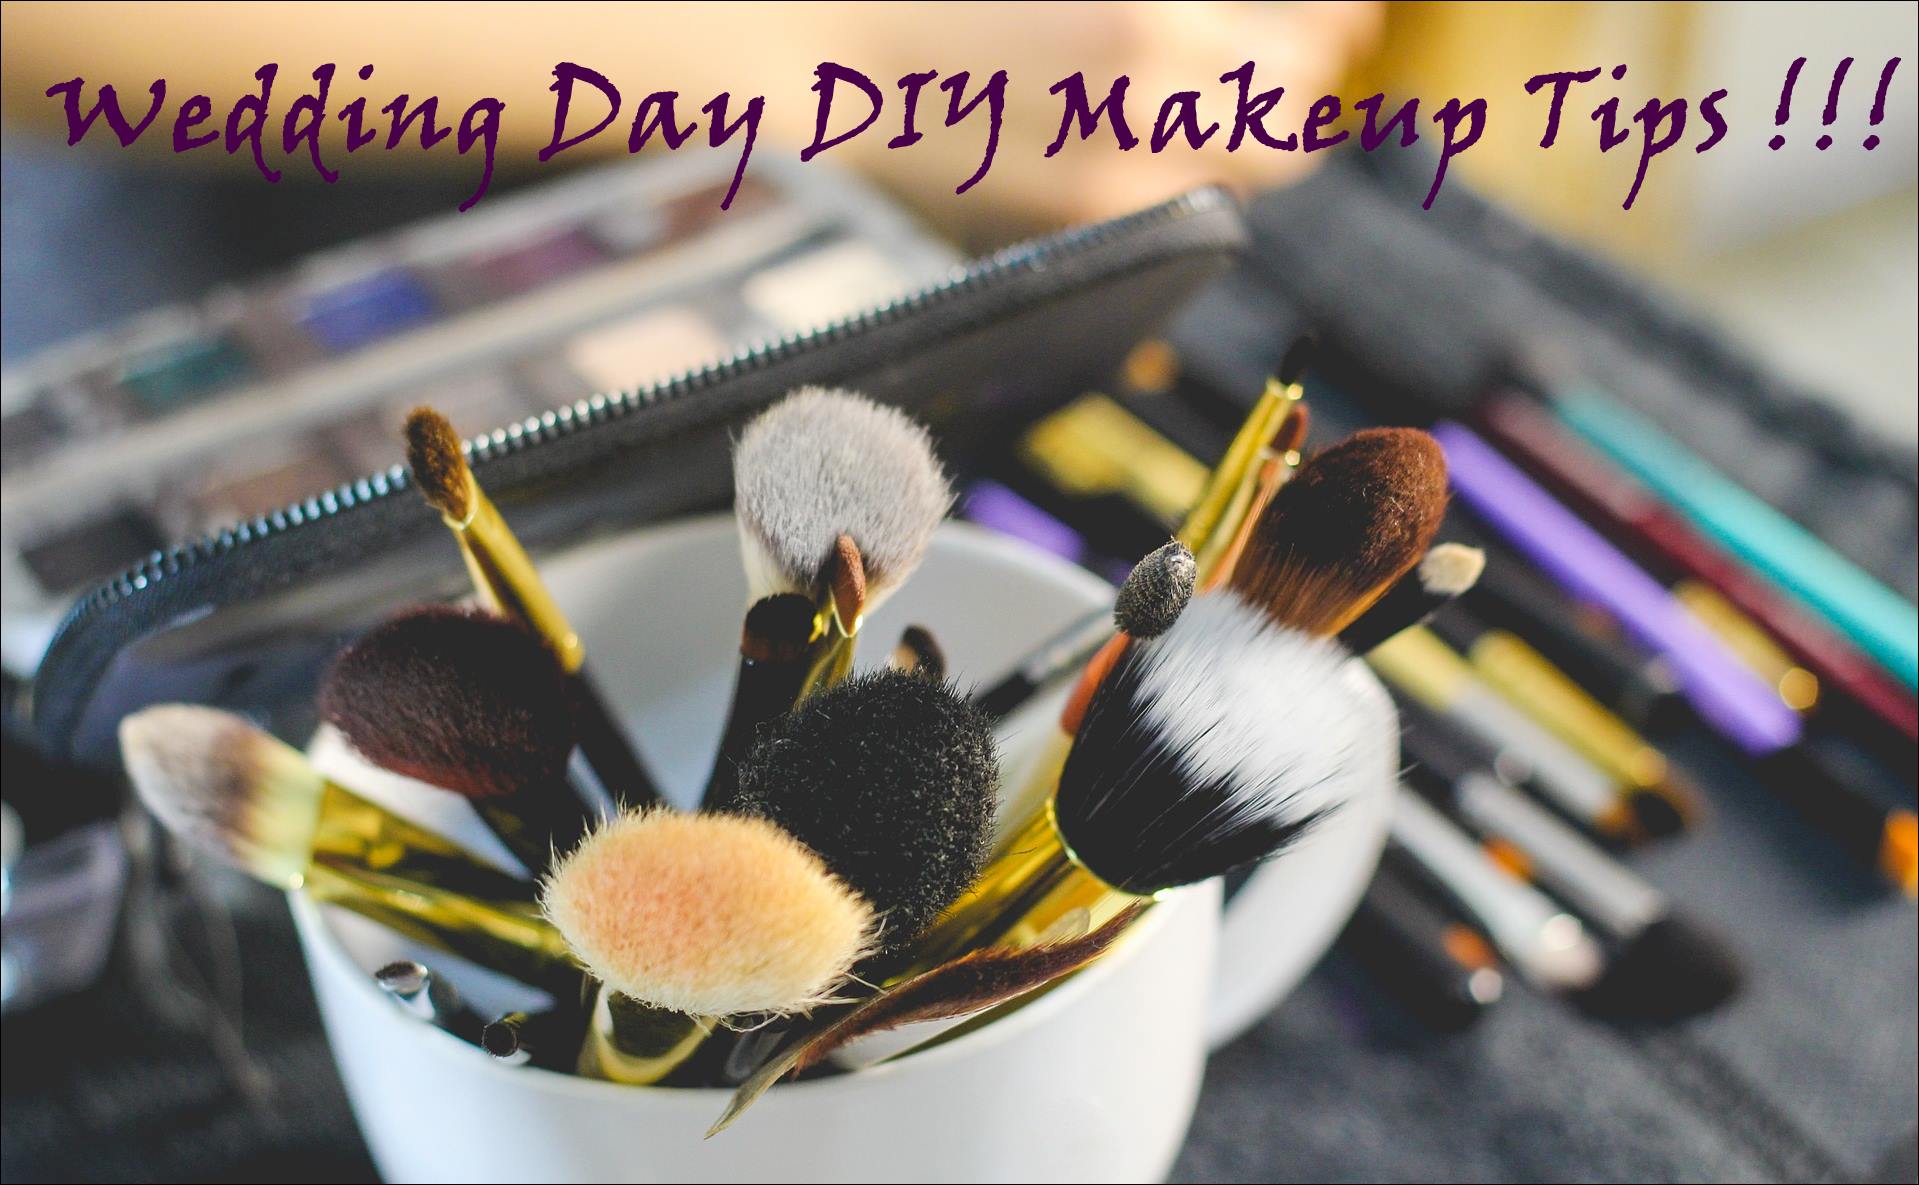 Wedding Day DIY Makeup Tips !!!